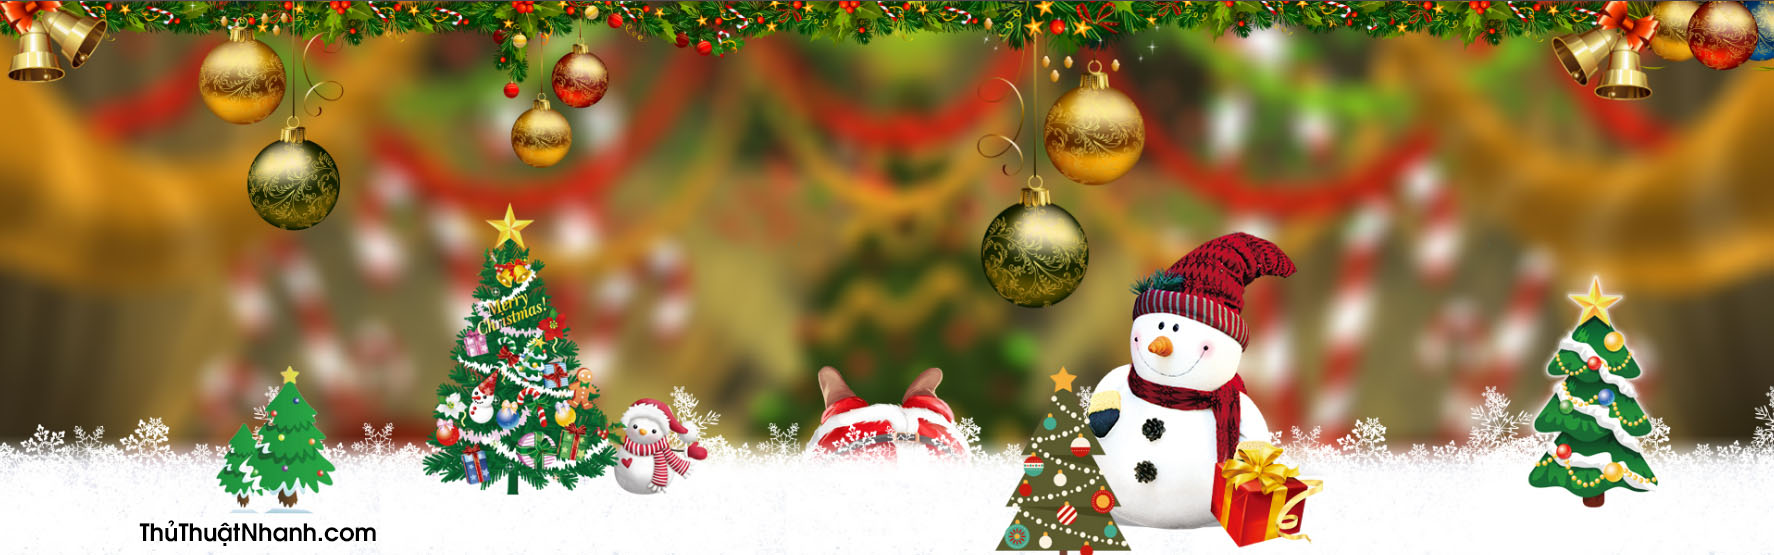 Tìm kiếm một bức ảnh bìa Facebook đẹp để chào đón mùa giáng sinh? Đến với trang web của chúng tôi và lựa chọn trong kho ảnh bìa Facebook giáng sinh phong phú và đa dạng, mang đến không khí lễ hội ấm áp cho trang Facebook của bạn.